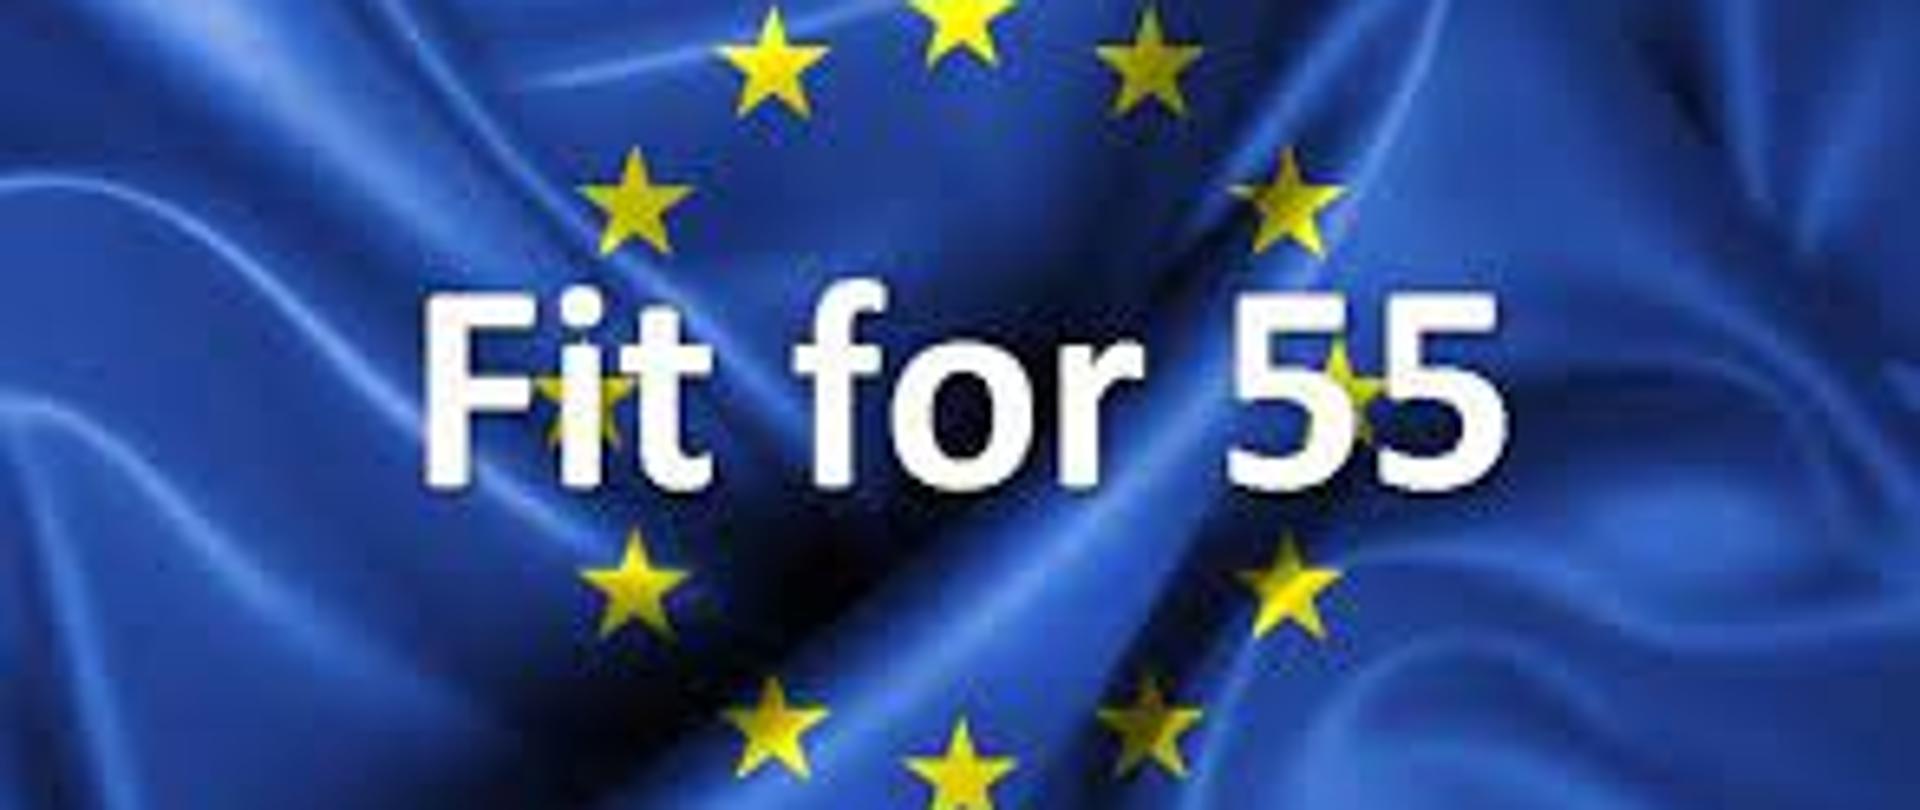 Logo z napisem Fit for 55 na tle flagi Unii Europejskiej